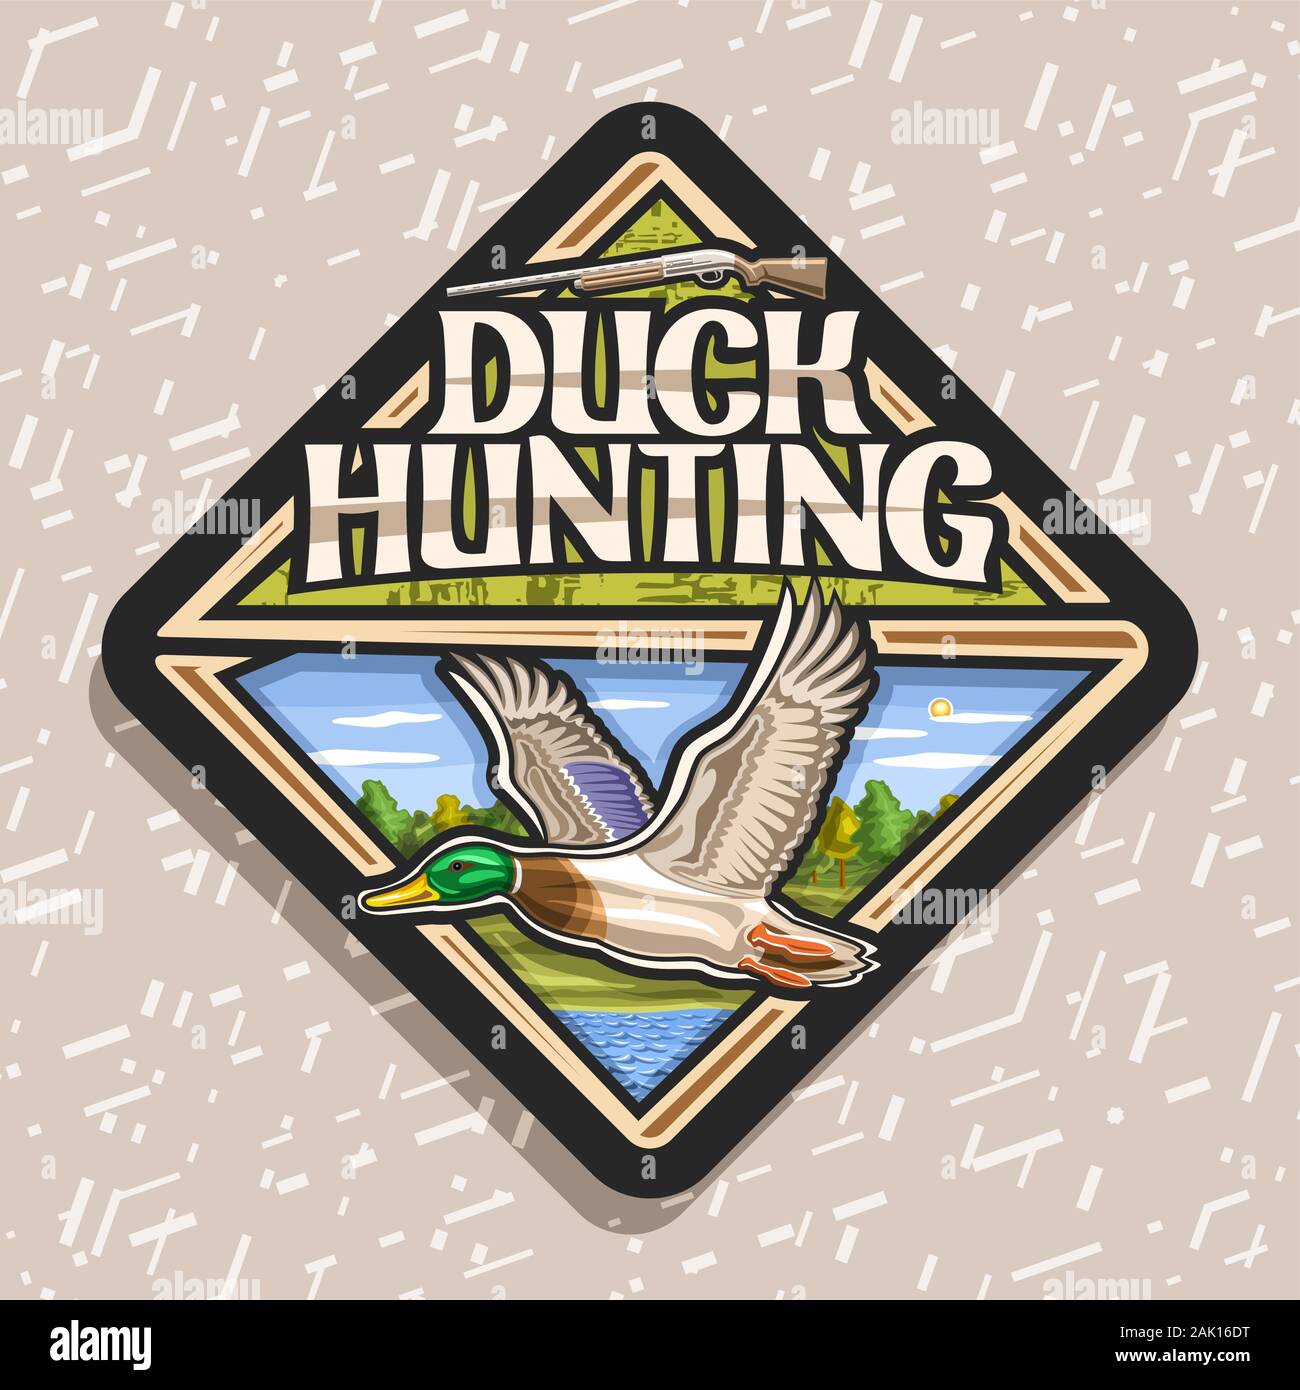 Logo Vector pour chasser le canard, décoratives rhomb tag avec illustration de canard mâle en vol sur fond d'arbres et de vieux fusil, des affiches pour chasser cl Illustration de Vecteur